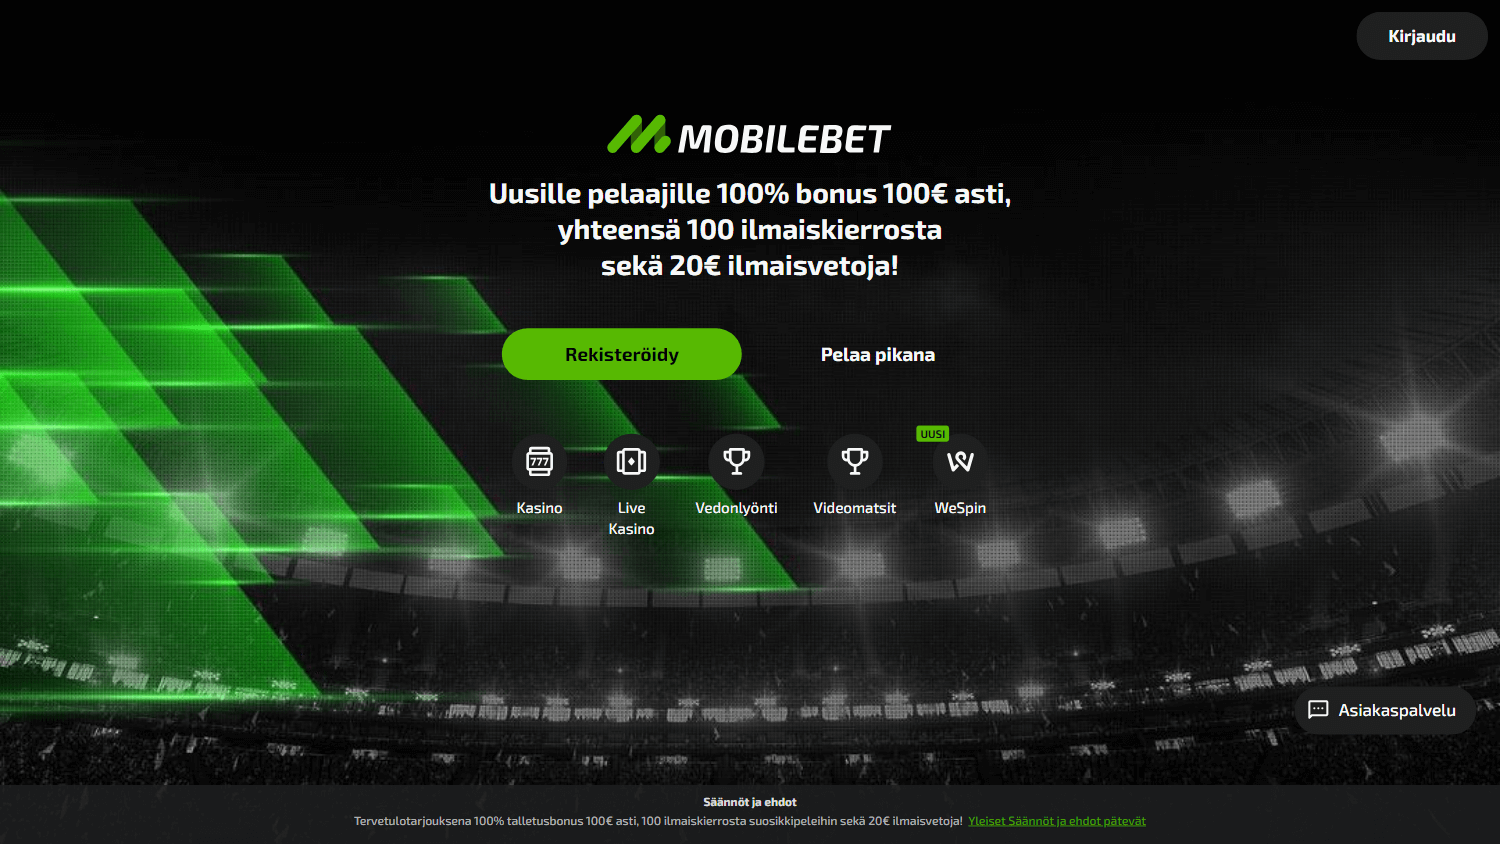 mobilebet_casino_homepage_desktop